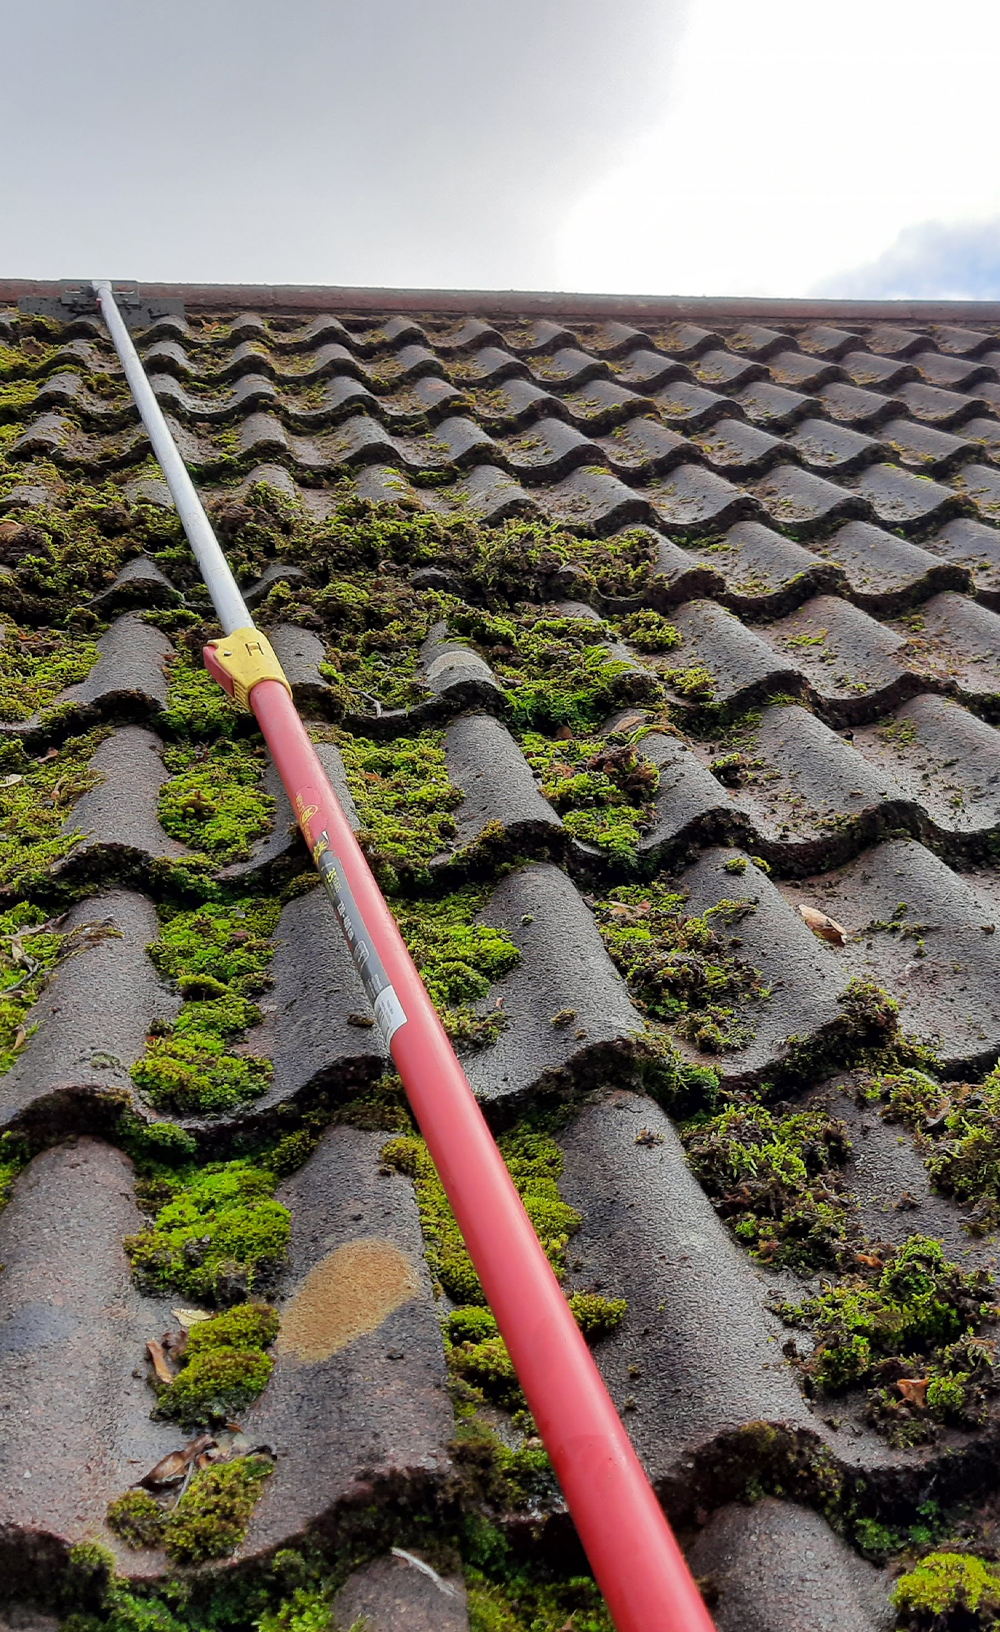 Nettoyage et demoussage de toiture à Bezons (95870) dans le Val d'Oise (95)